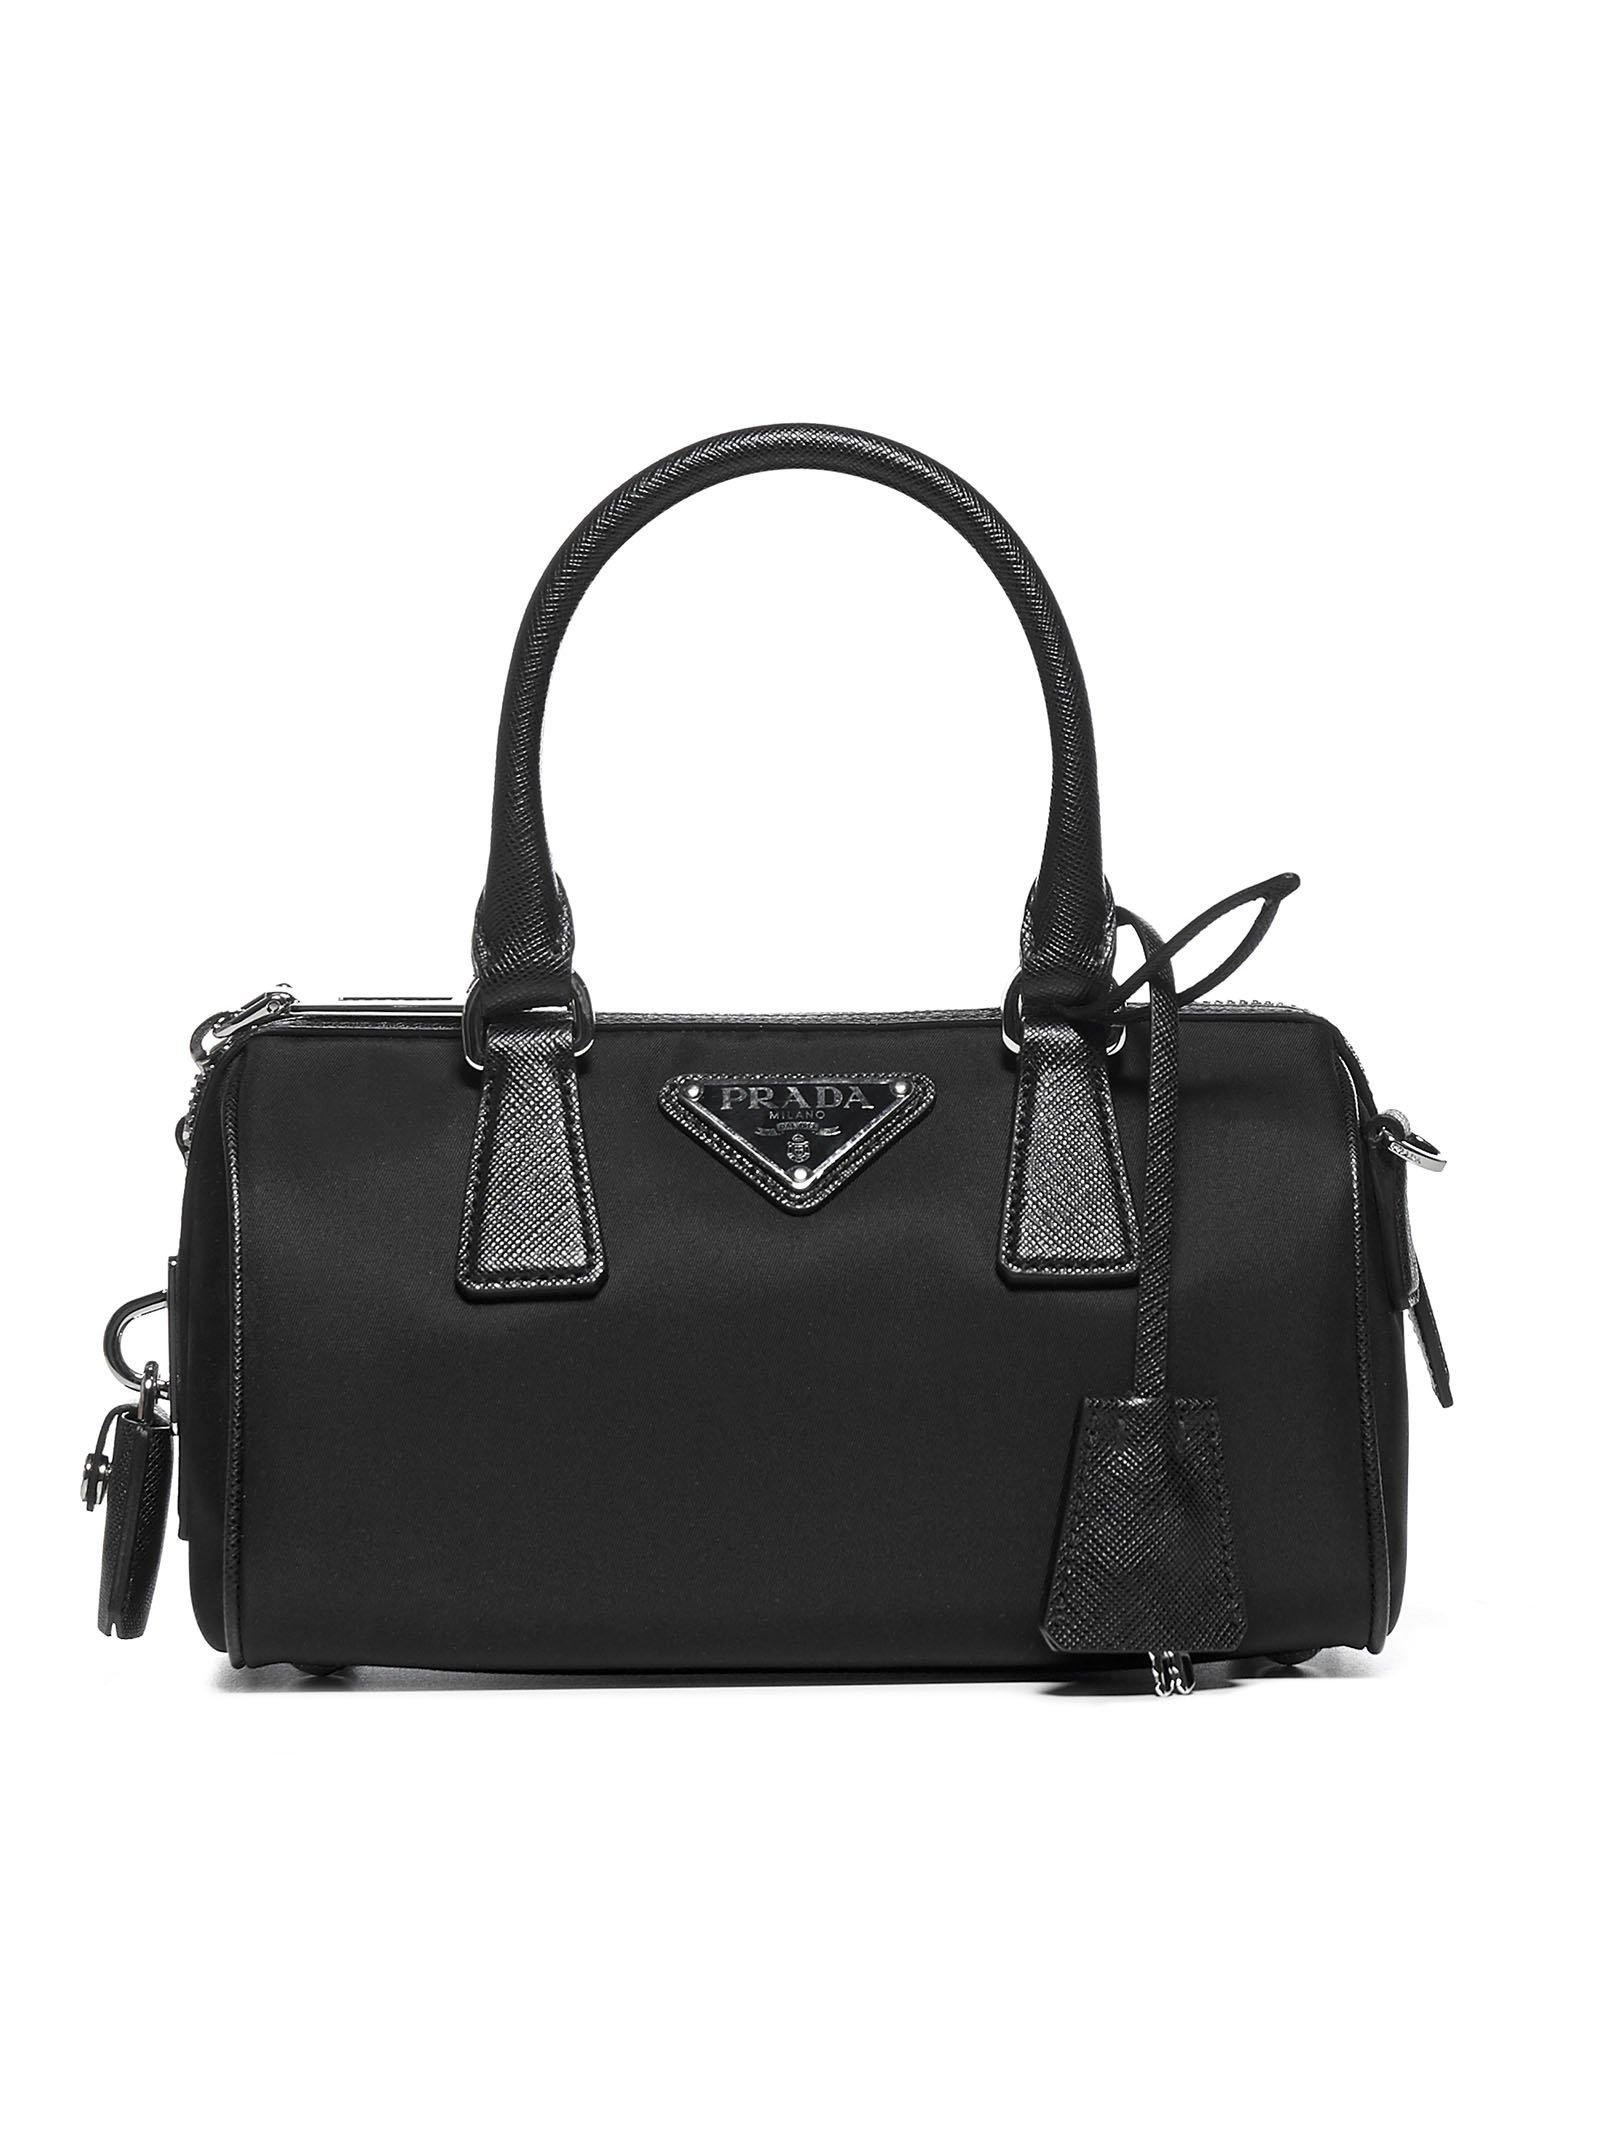 Prada Re-edition 2005 Nylon And Saffiano Leather Mini-bag in Black